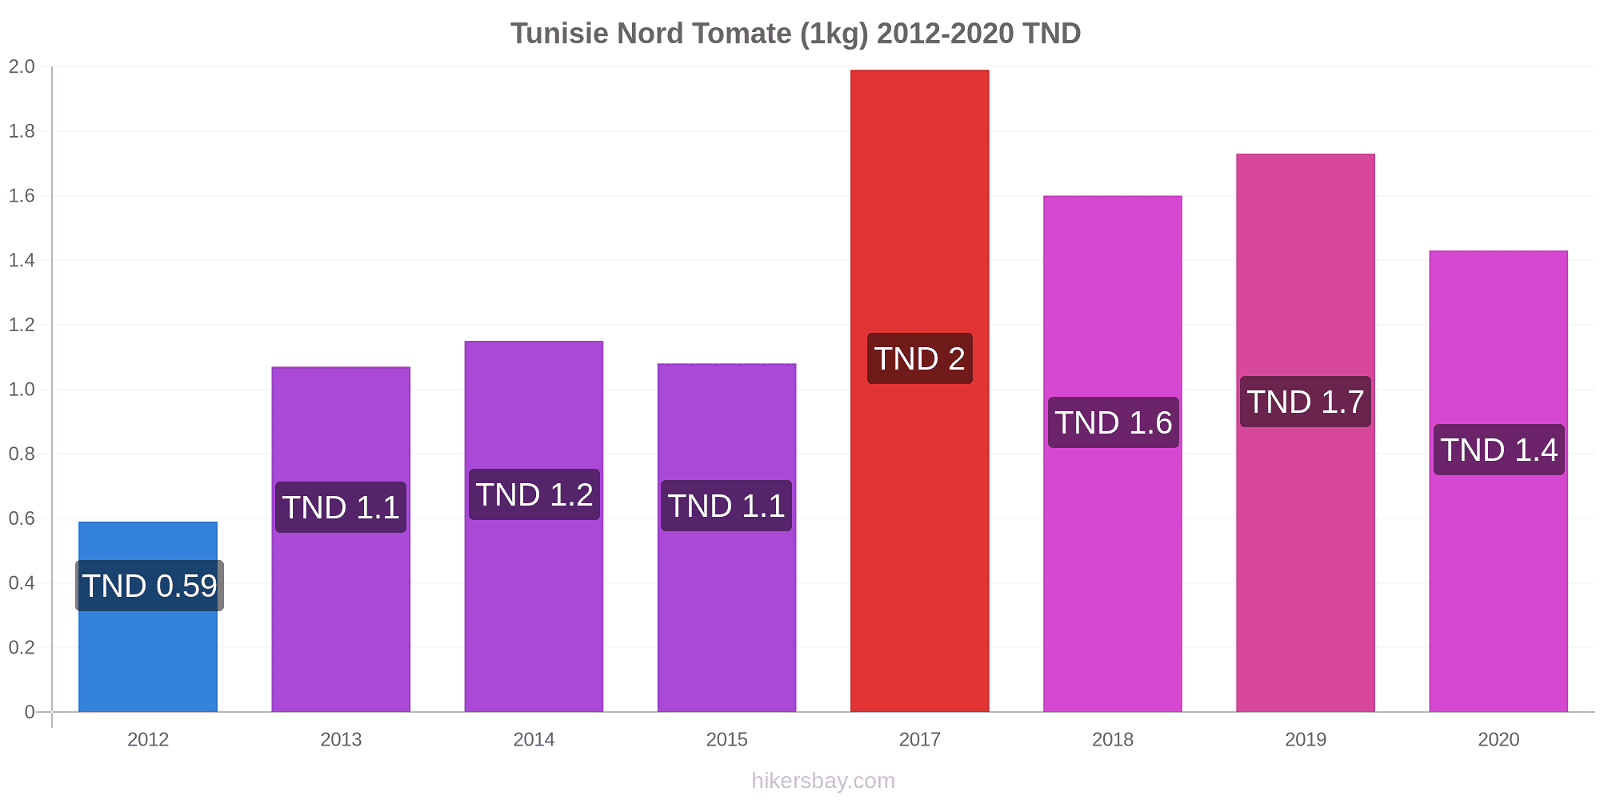 Tunisie Nord changements de prix Tomate (1kg) hikersbay.com